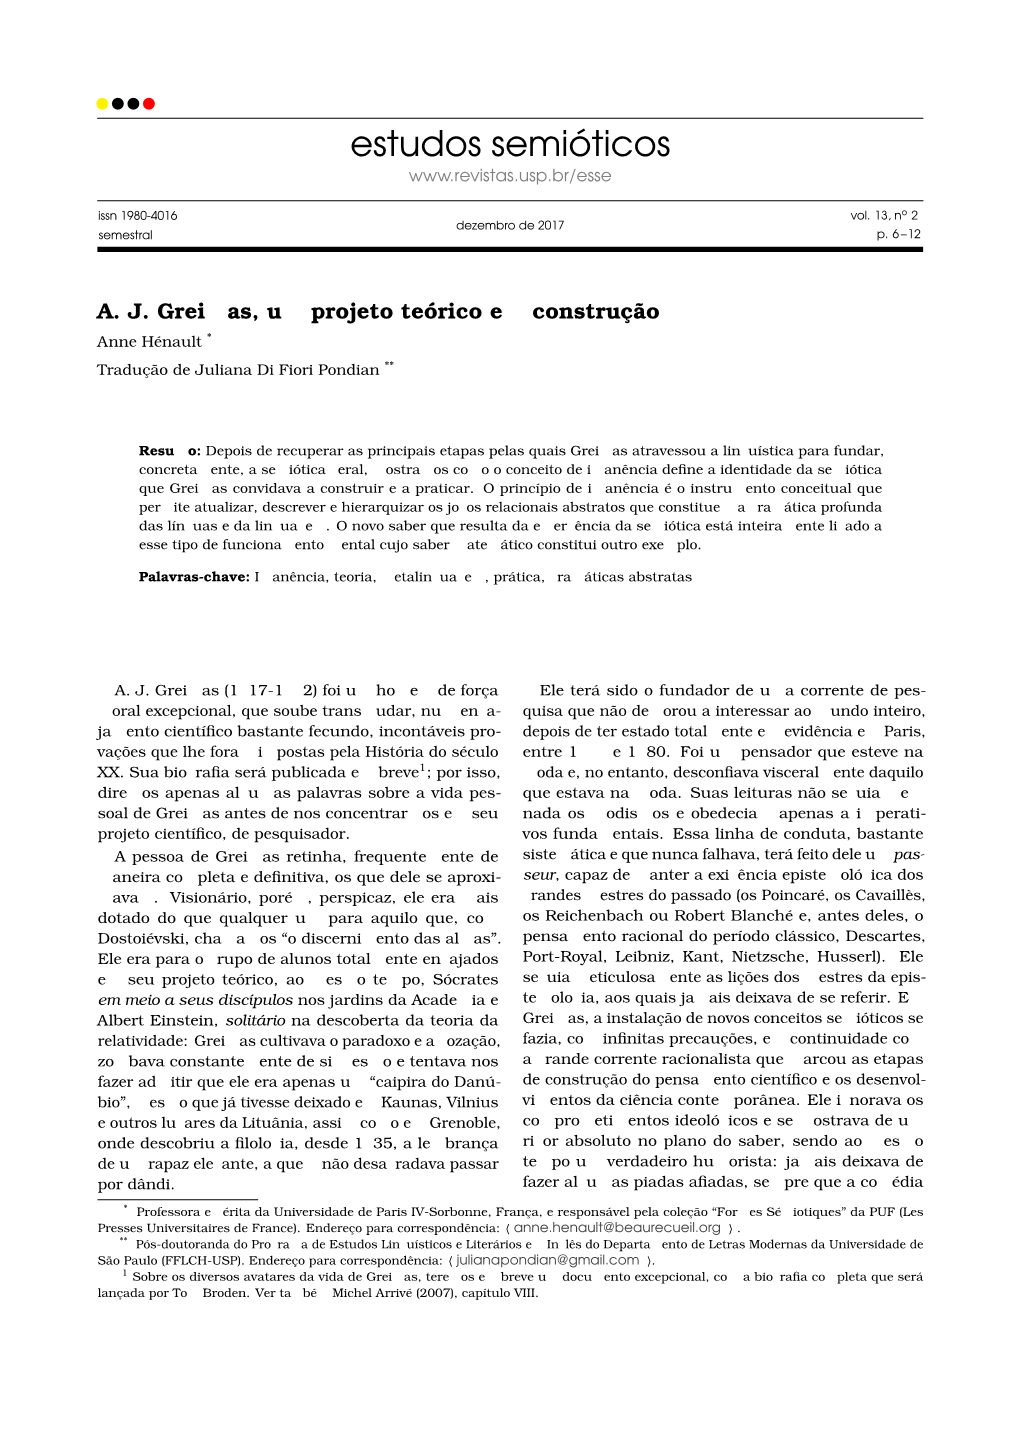 A. J. Greimas, Um Projeto Teórico Em Construção Anne Hénault * Tradução De Juliana Di Fiori Pondian **